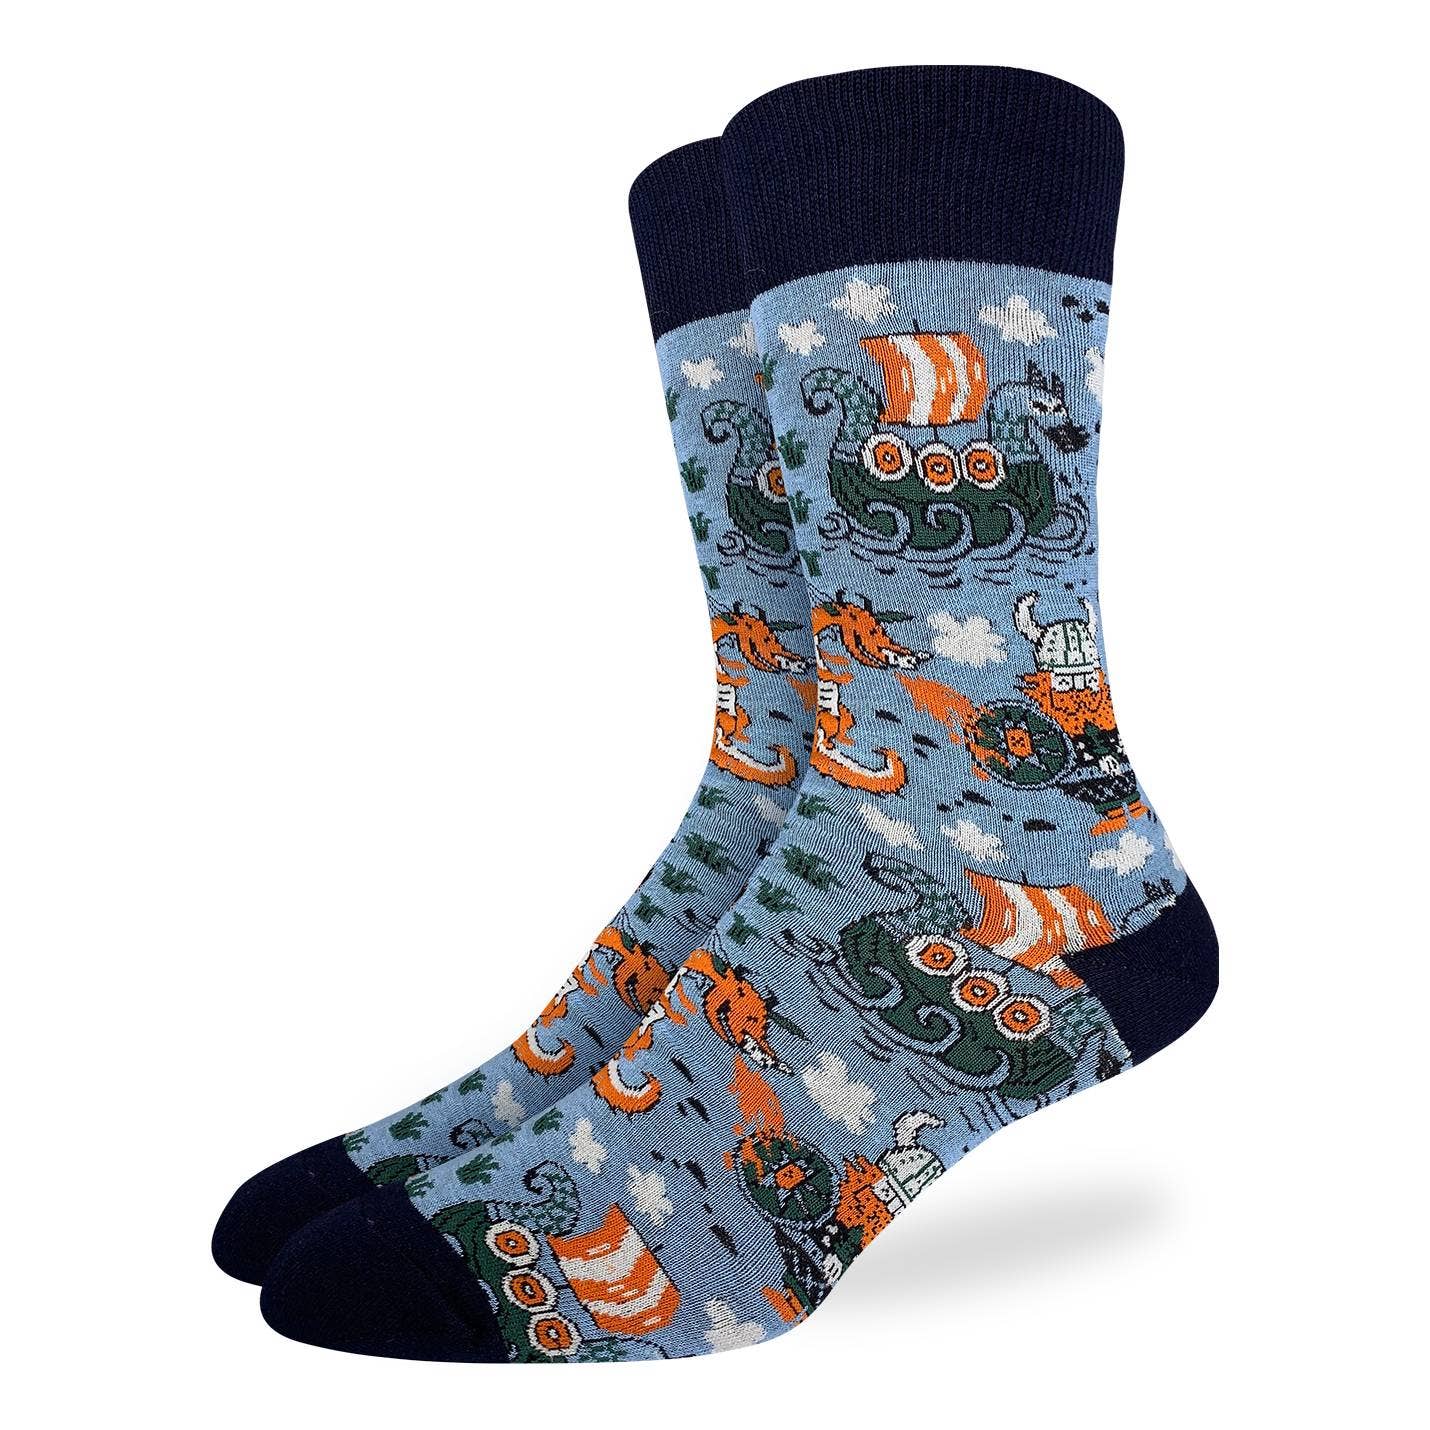 Men's Viking Socks - La De Da